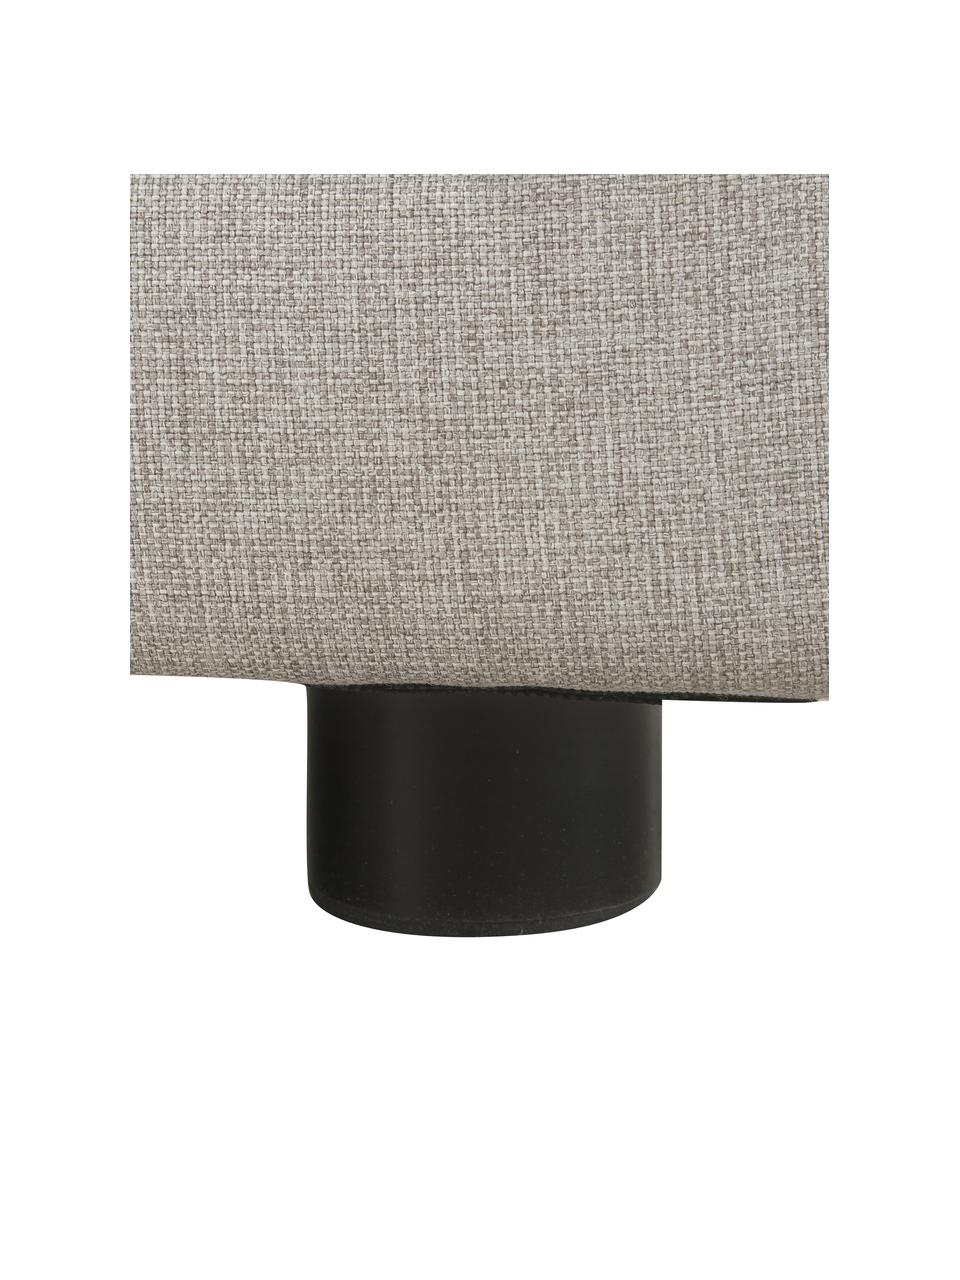 Voetenbank Ari in grijs, Bekleding: 100% polyester, Frame: massief hout, multiplex, Poten: kunststof, Geweven stof grijs, B 67 x D 59 cm